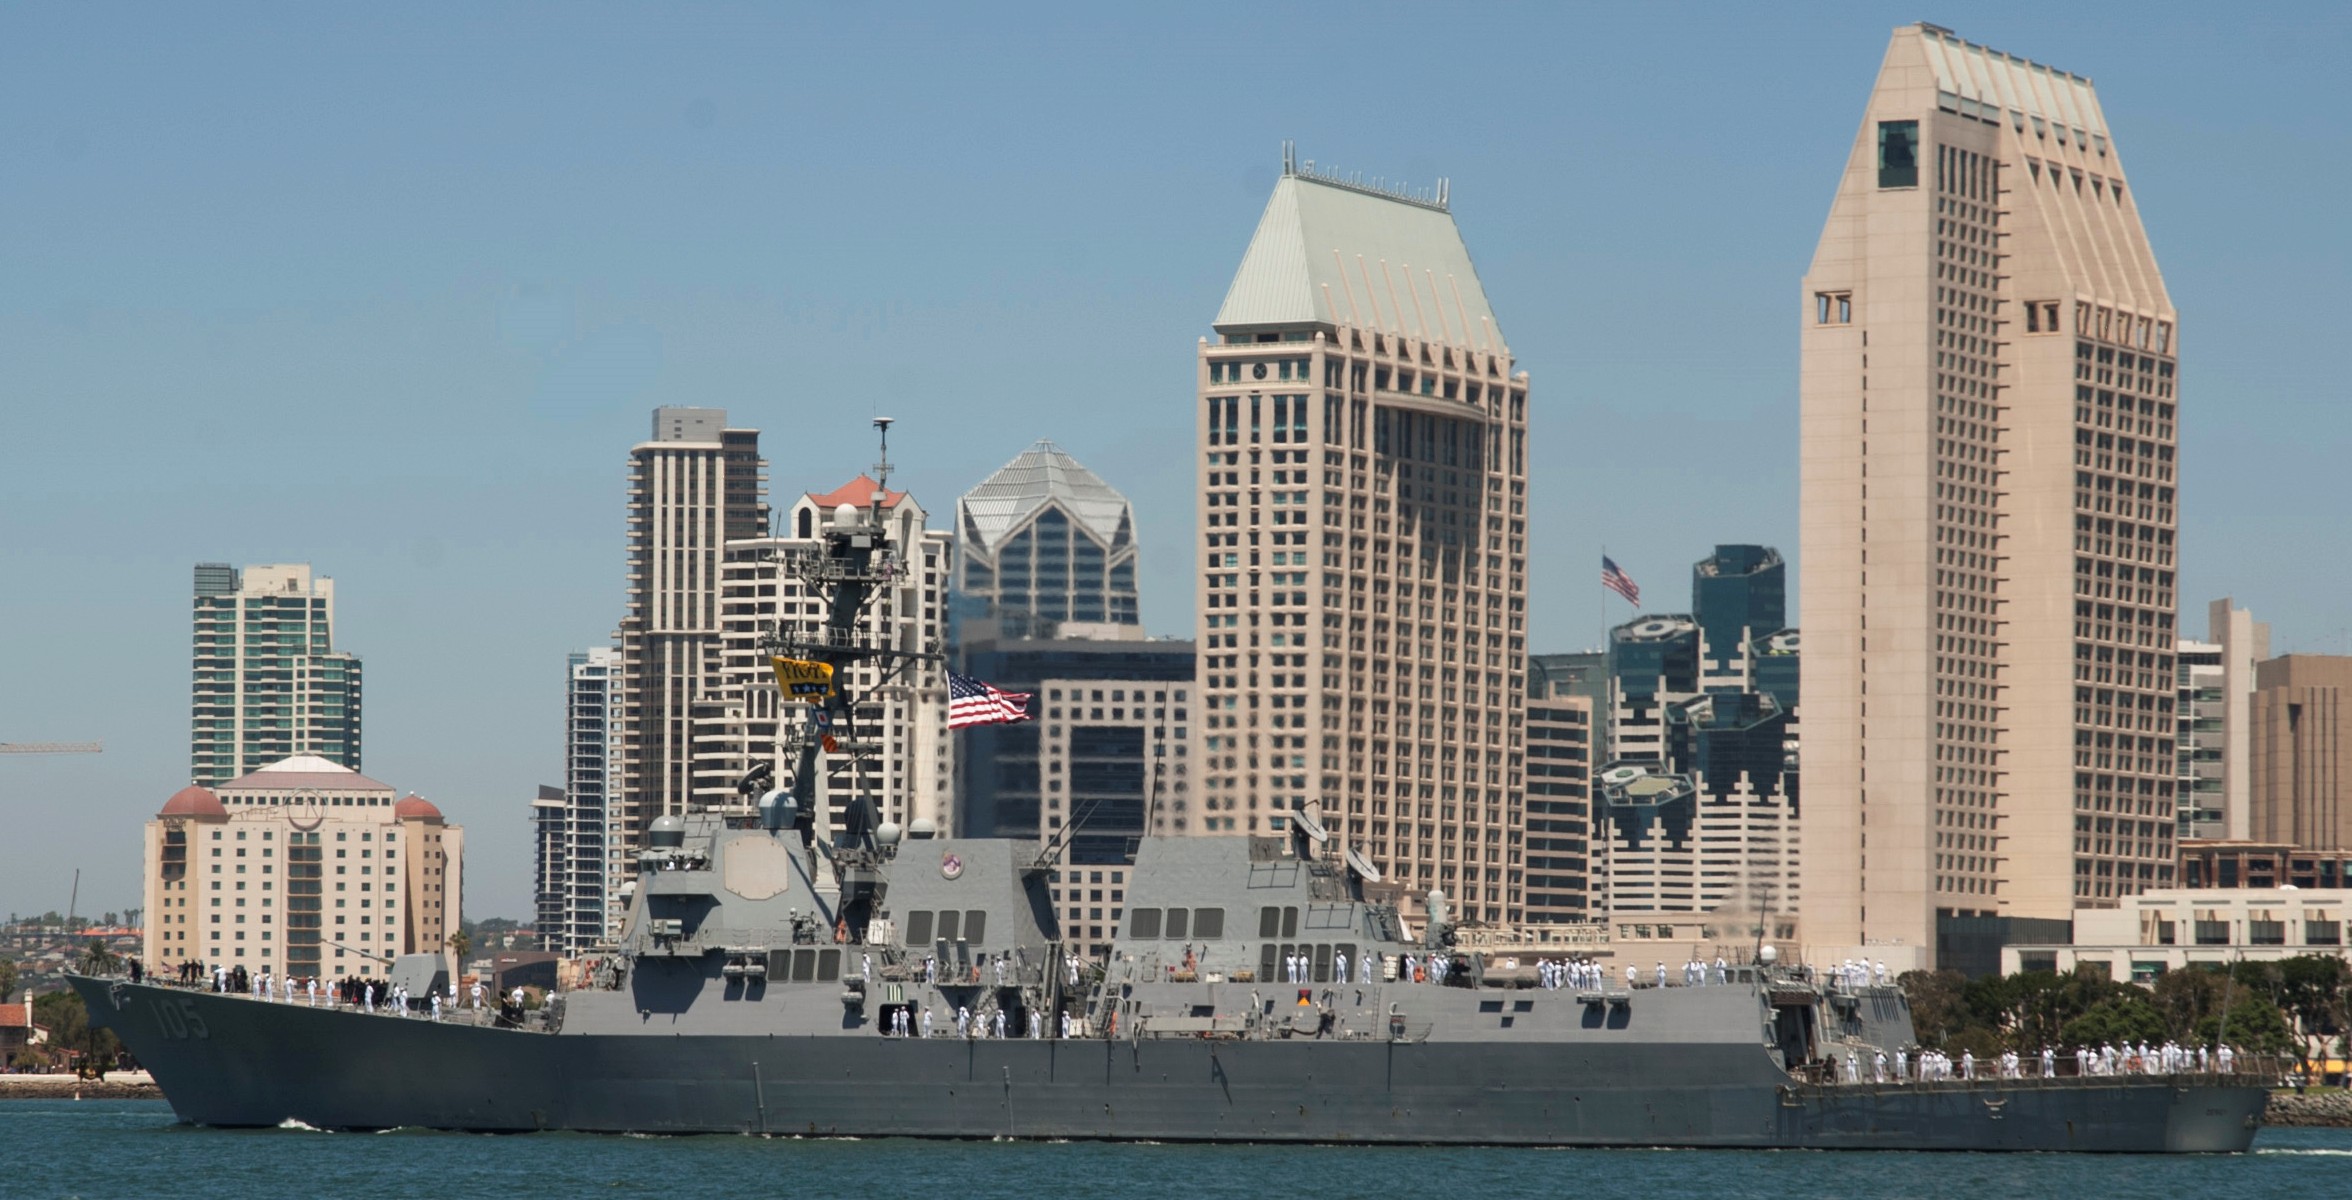 ddg-110 uss dewey arleigh burke class guided missile destroyer aegis us navy san diego california 26